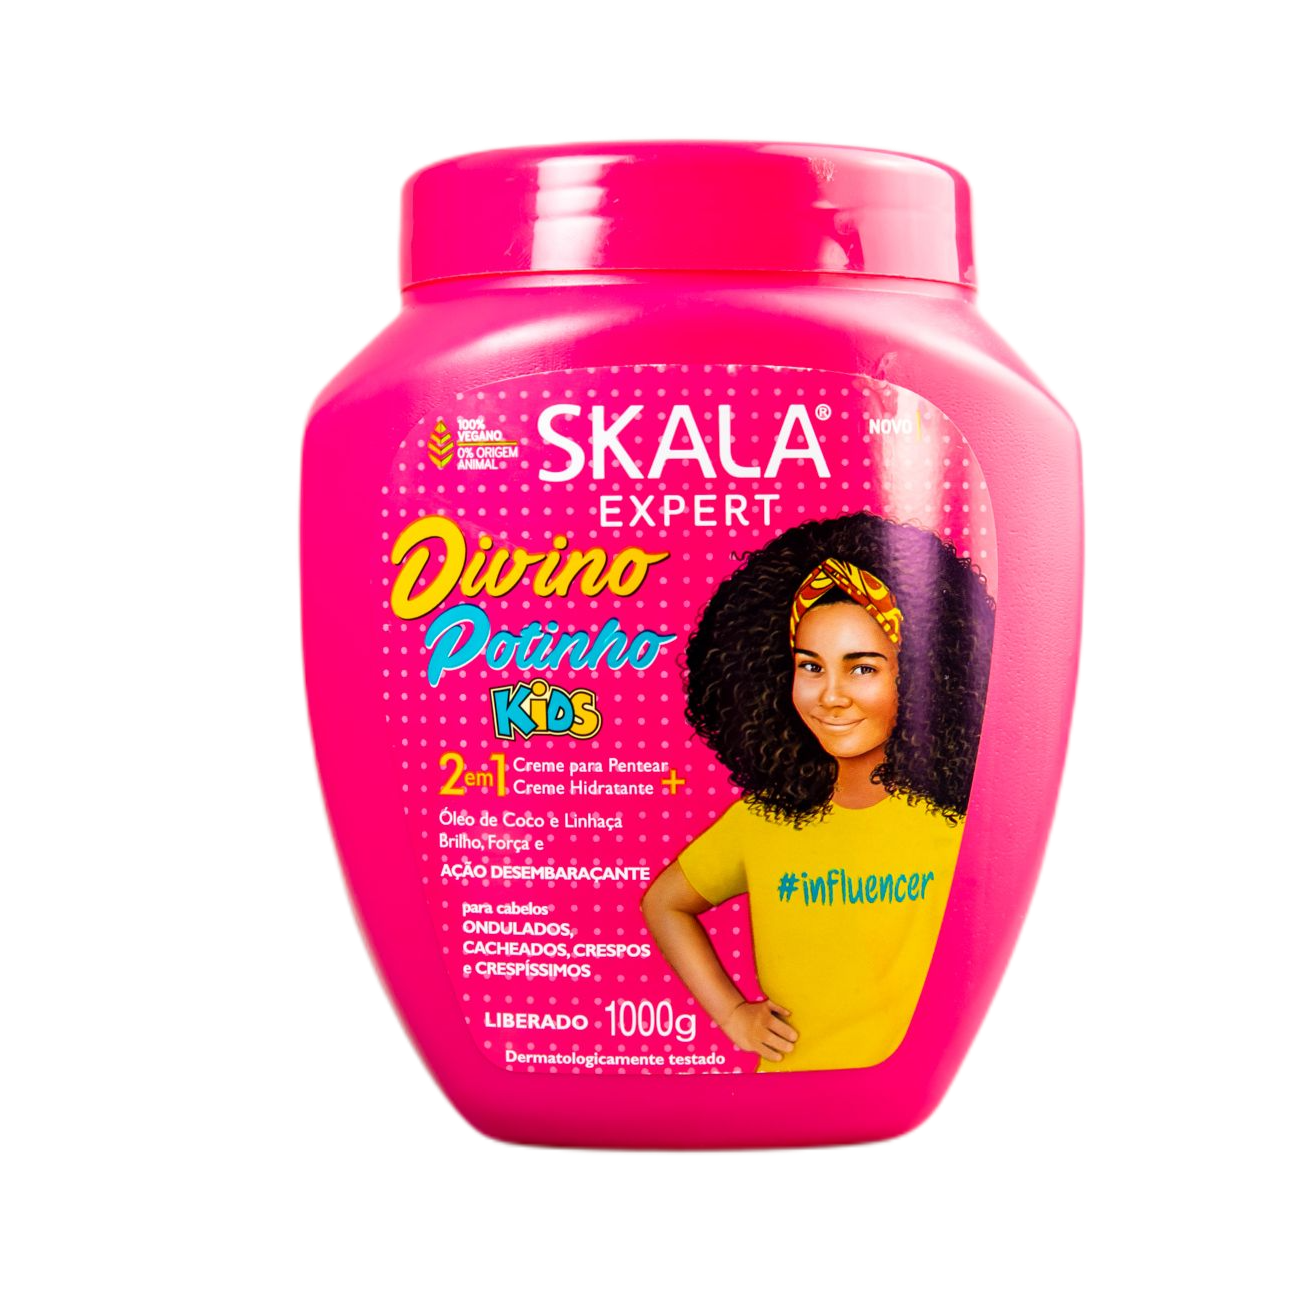 Skala Treatment Cream Crianças Divino Potinho / For Kids Hair Treatment Cream - Skala